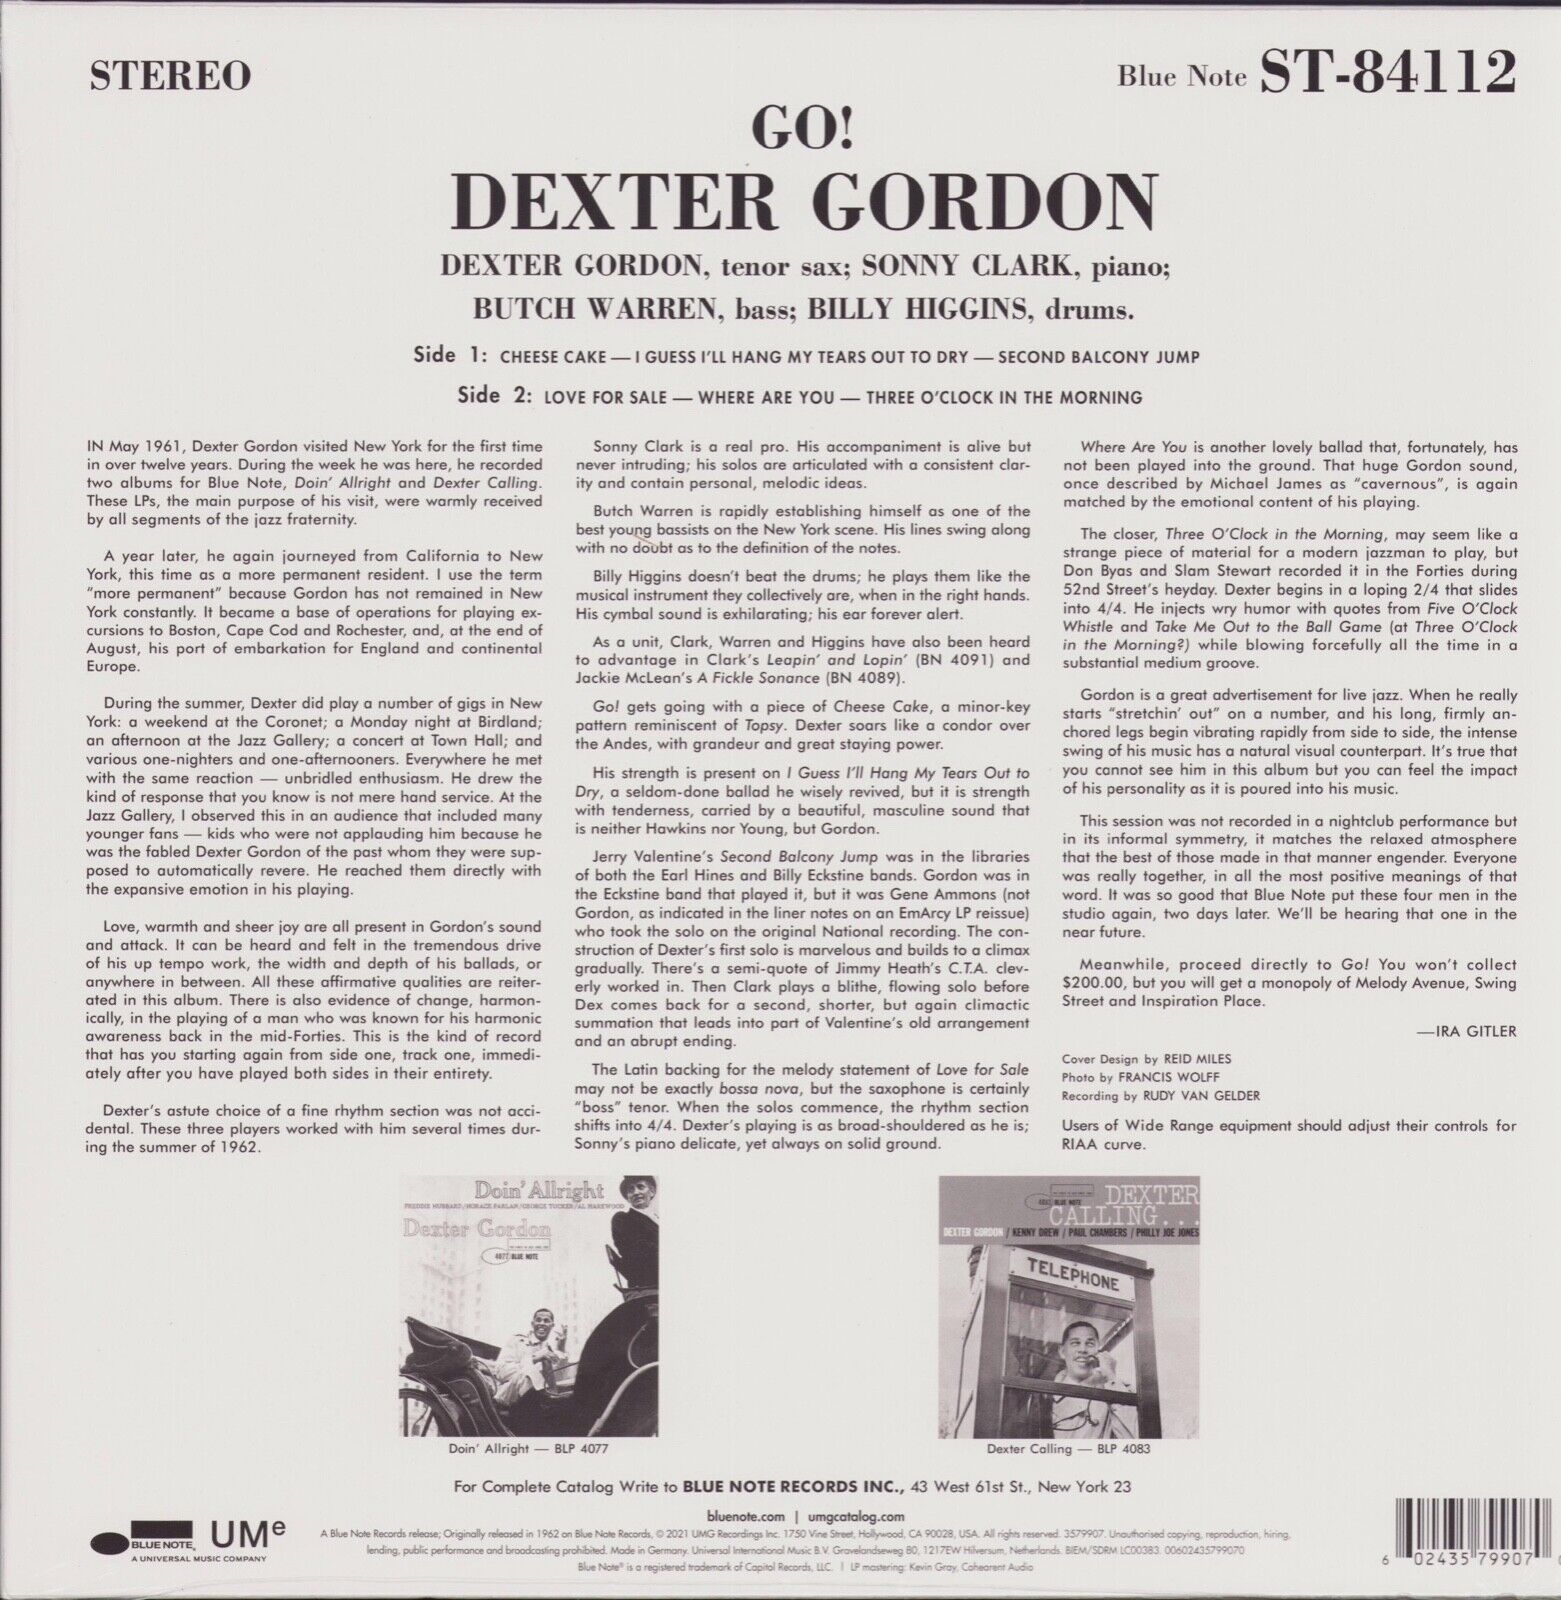 Dexter Gordon ‎- Go! Vinyl LP